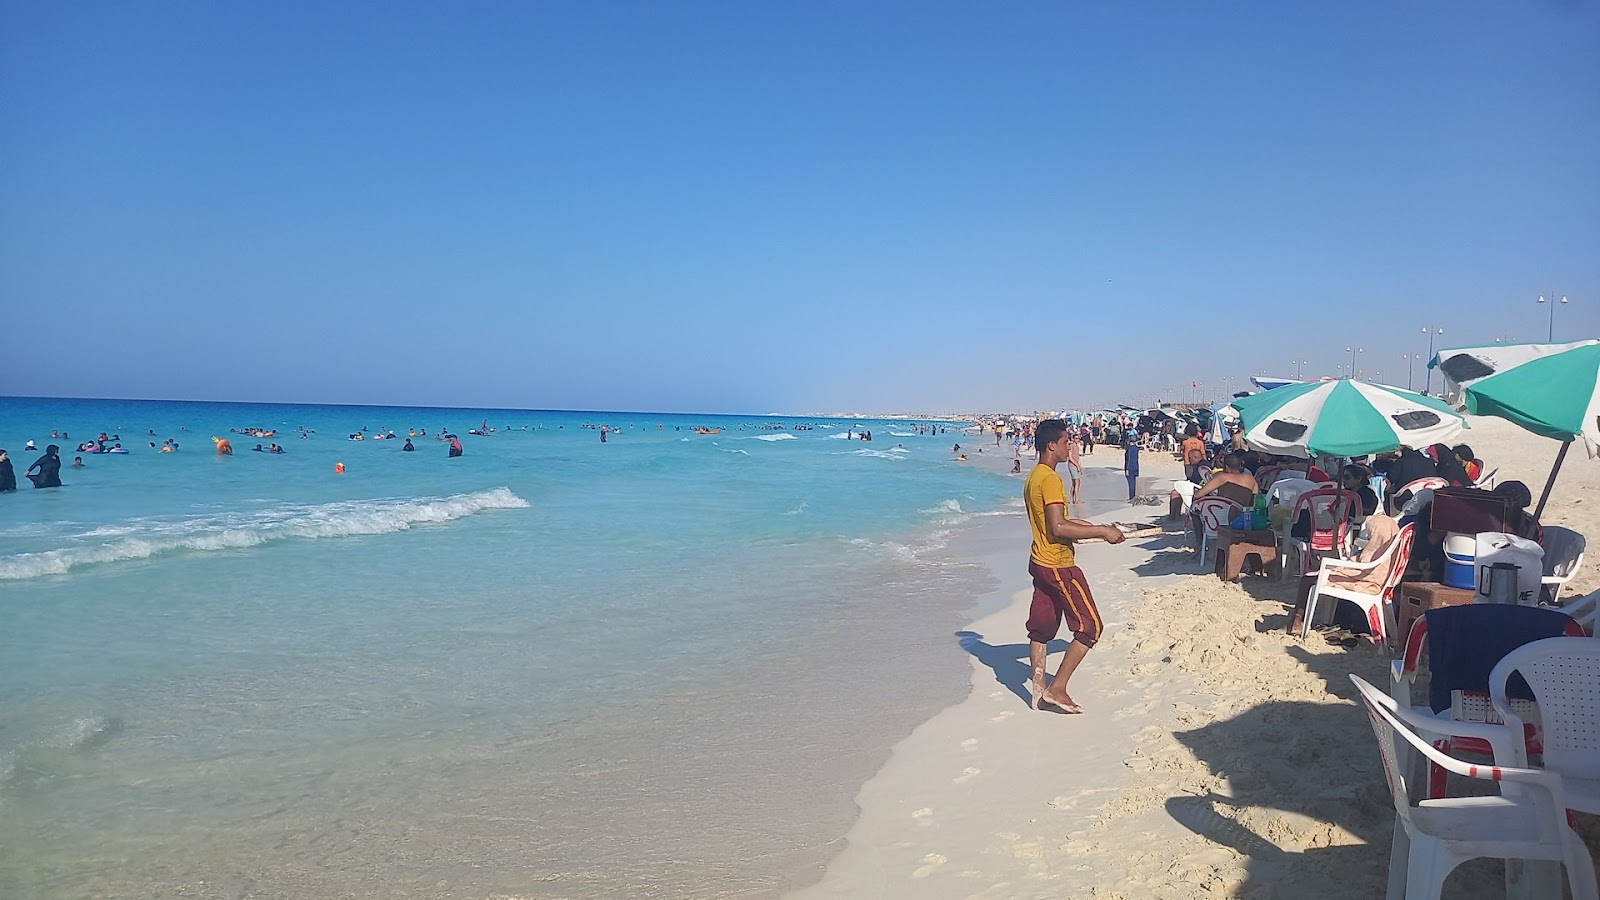 Photo de Dora Al Abyad Beach - endroit populaire parmi les connaisseurs de la détente